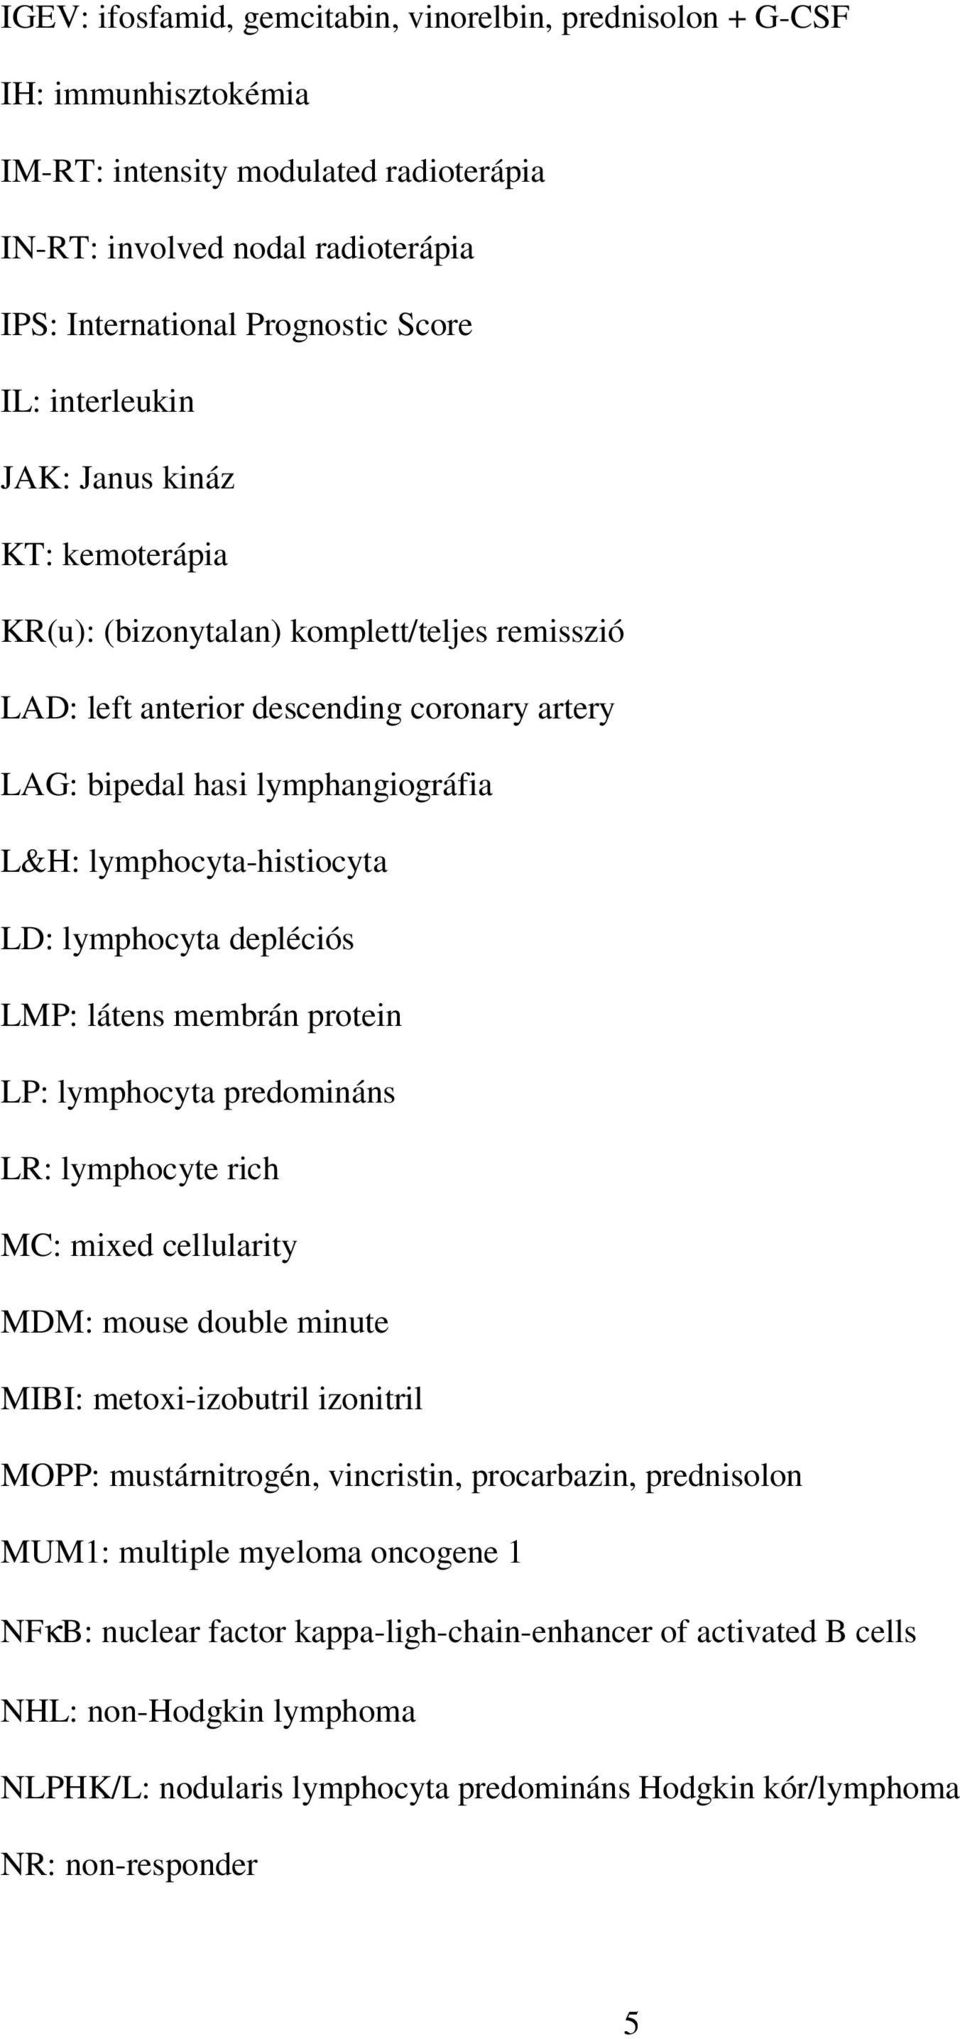 LD: lymphocyta depléciós LMP: látens membrán protein LP: lymphocyta predomináns LR: lymphocyte rich MC: mixed cellularity MDM: mouse double minute MIBI: metoxi-izobutril izonitril MOPP: